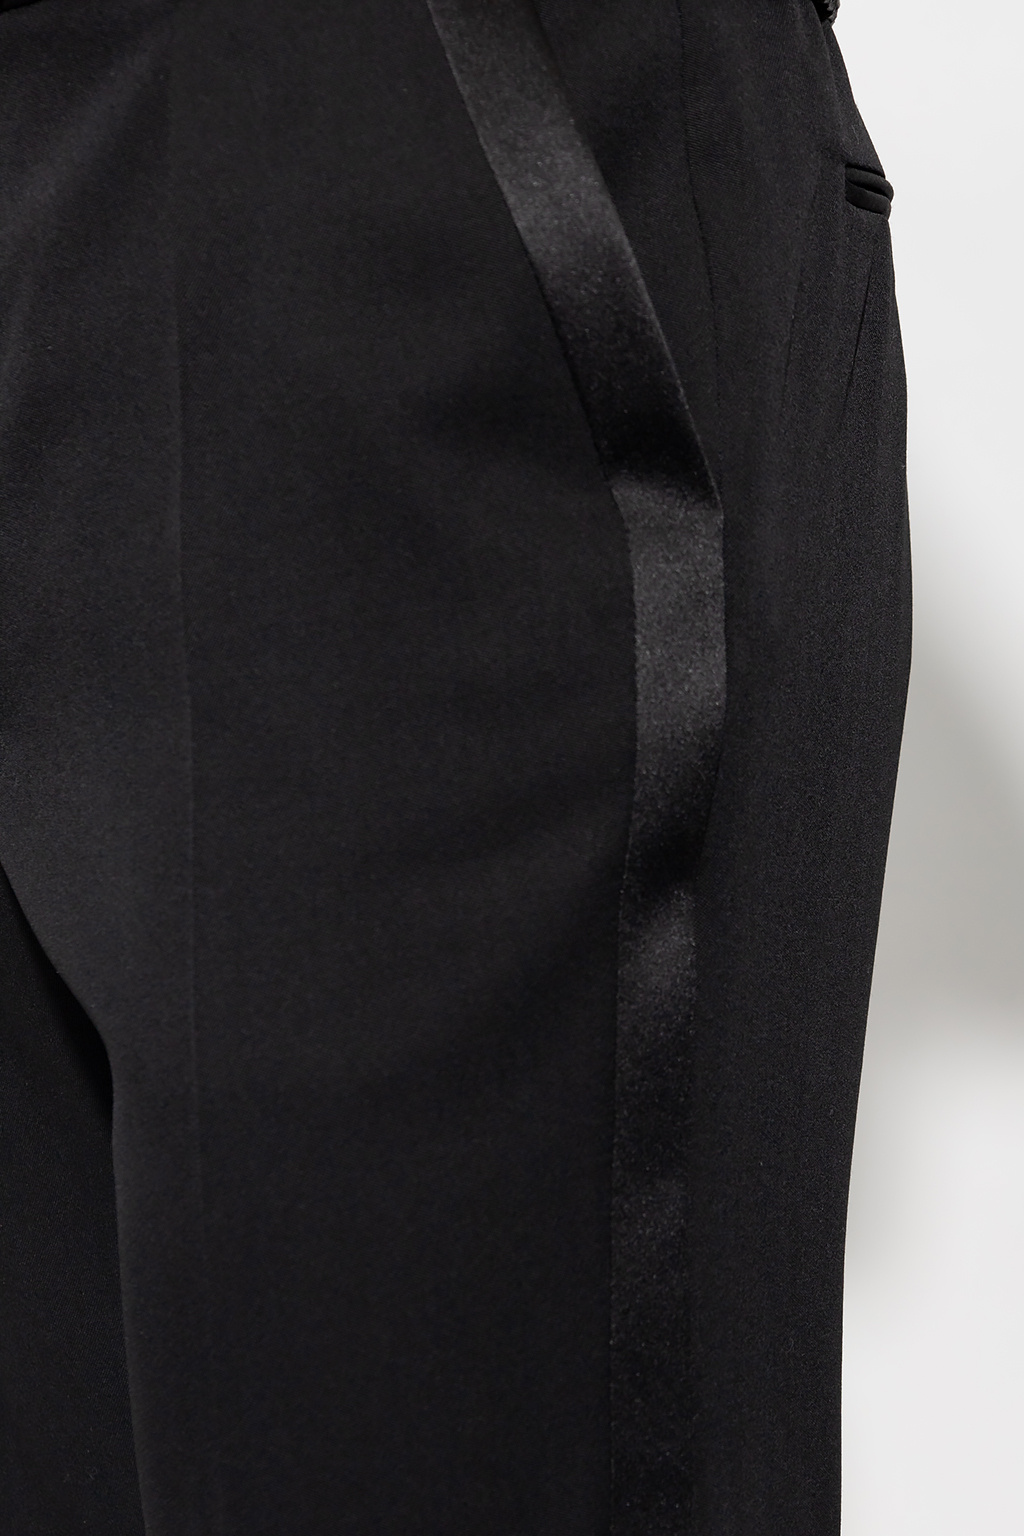 Saint Laurent Tuxedo zinko trousers